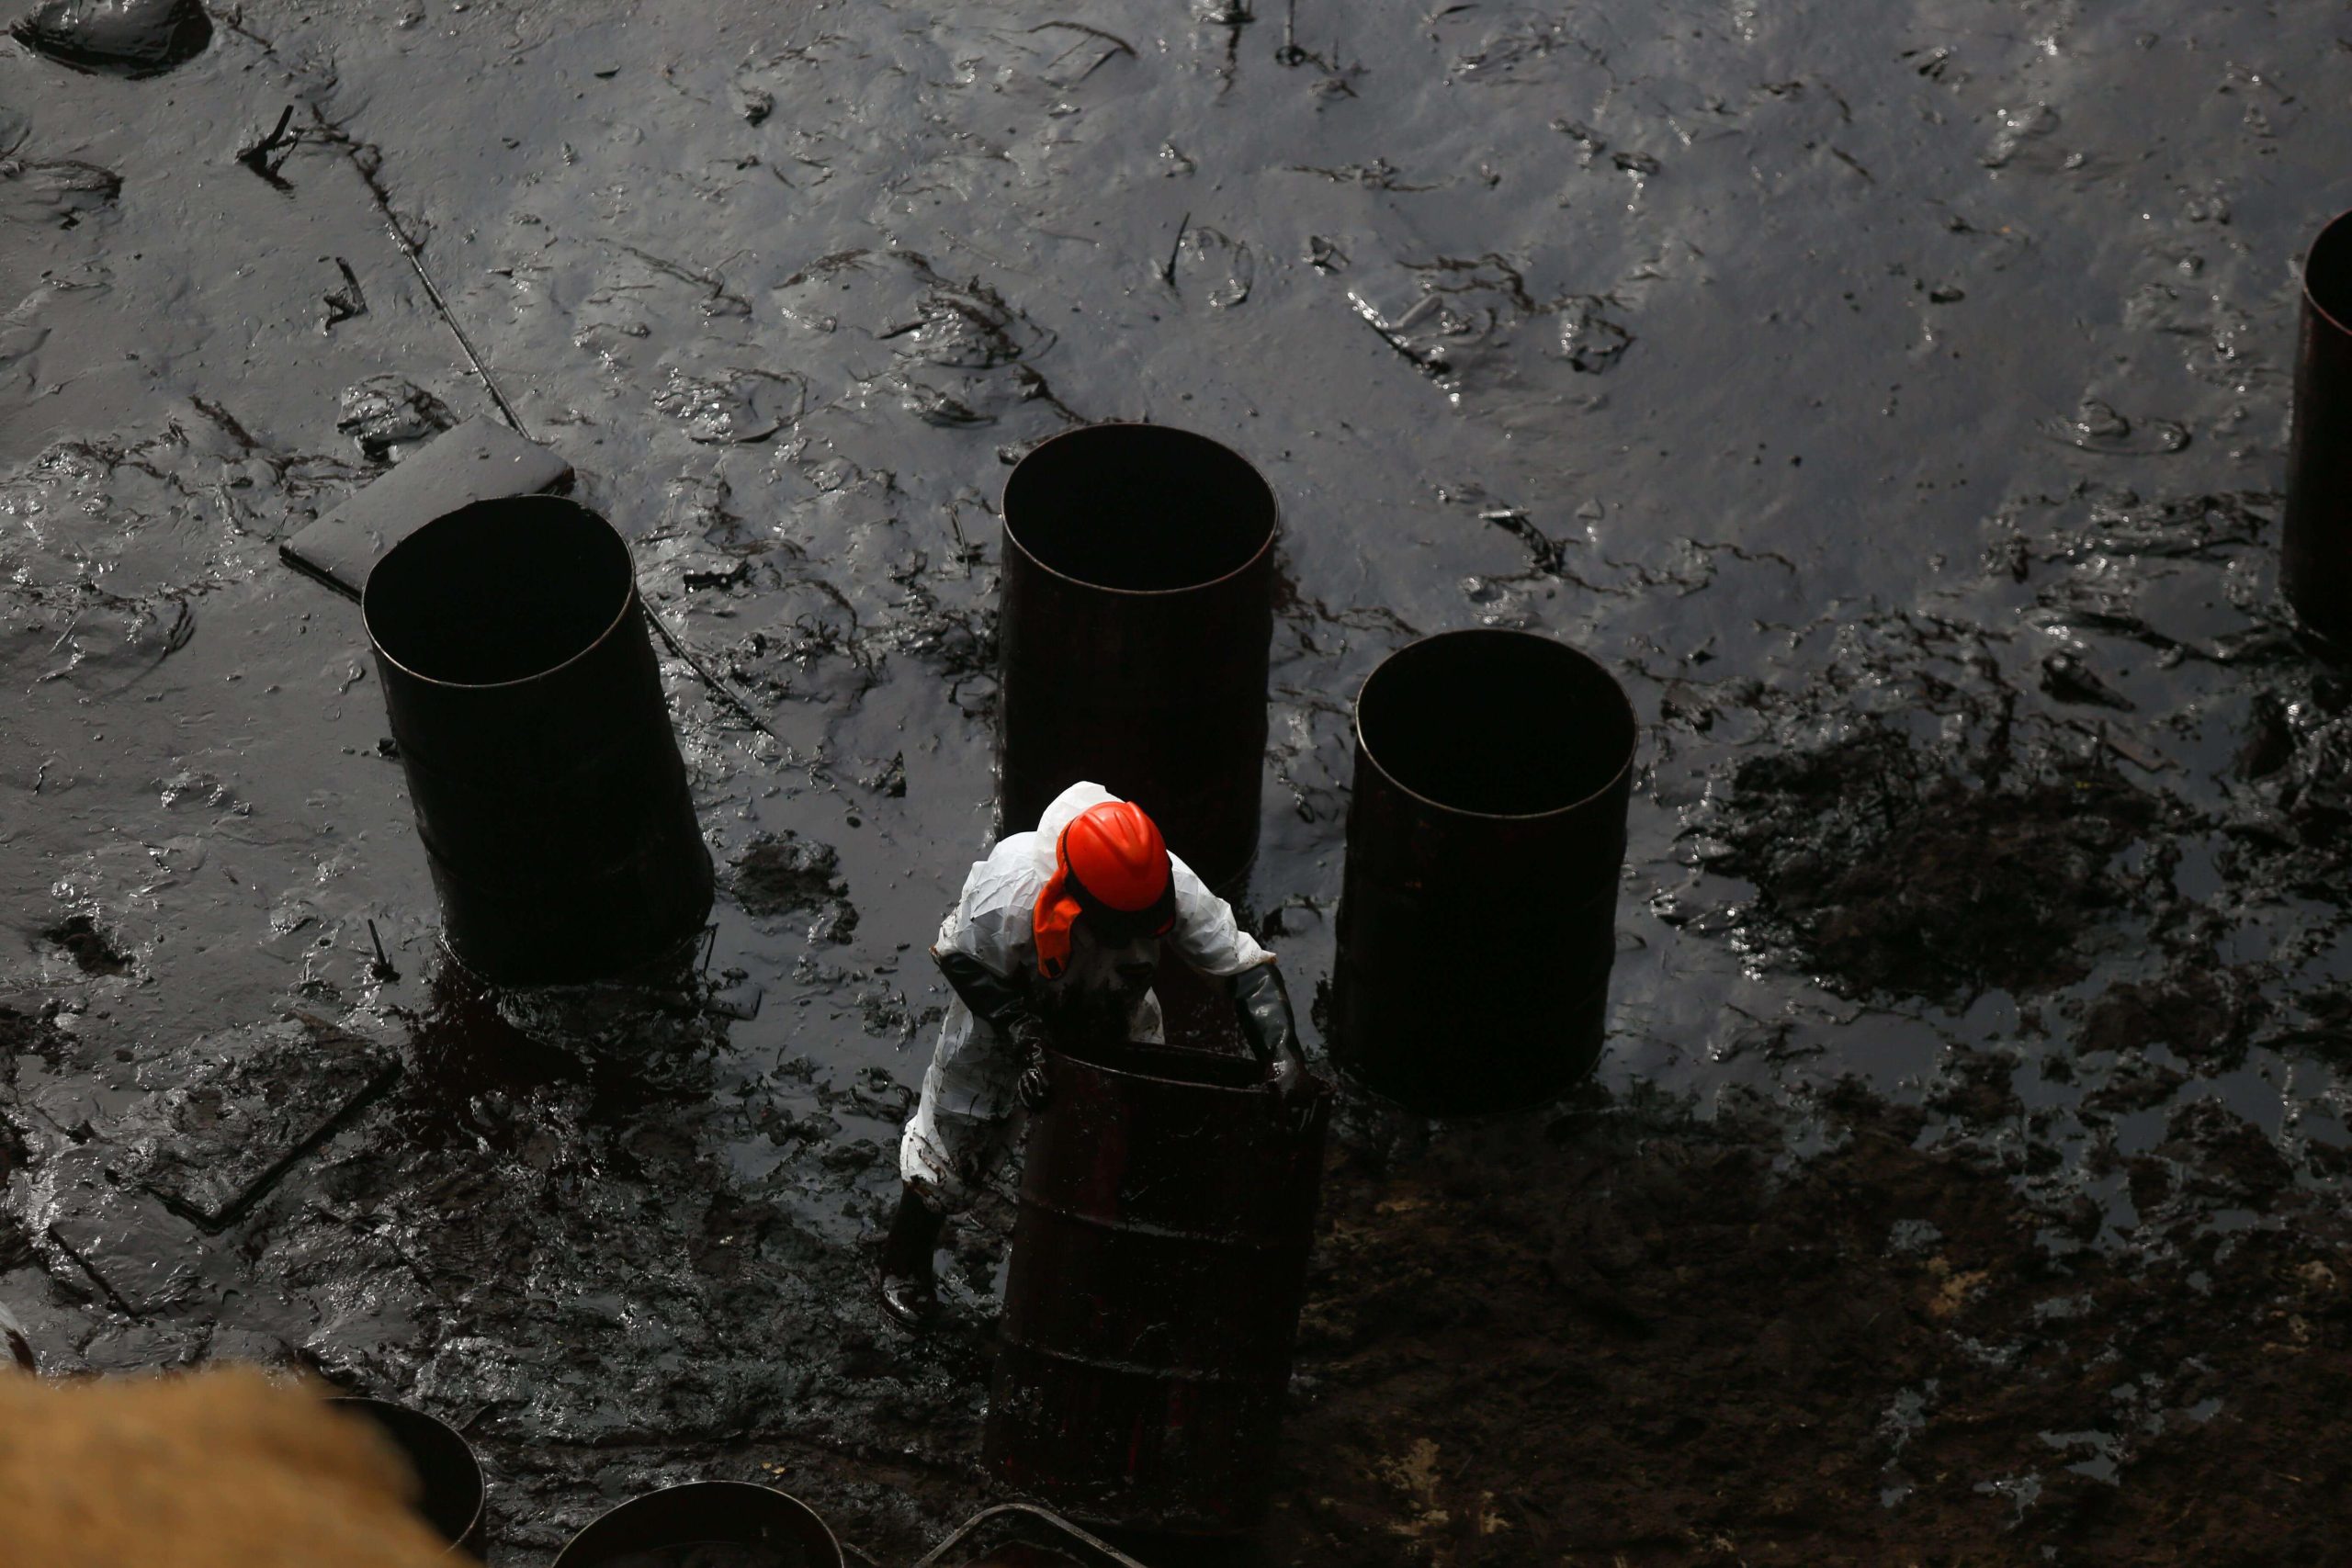 Oil spill in a Ecuador